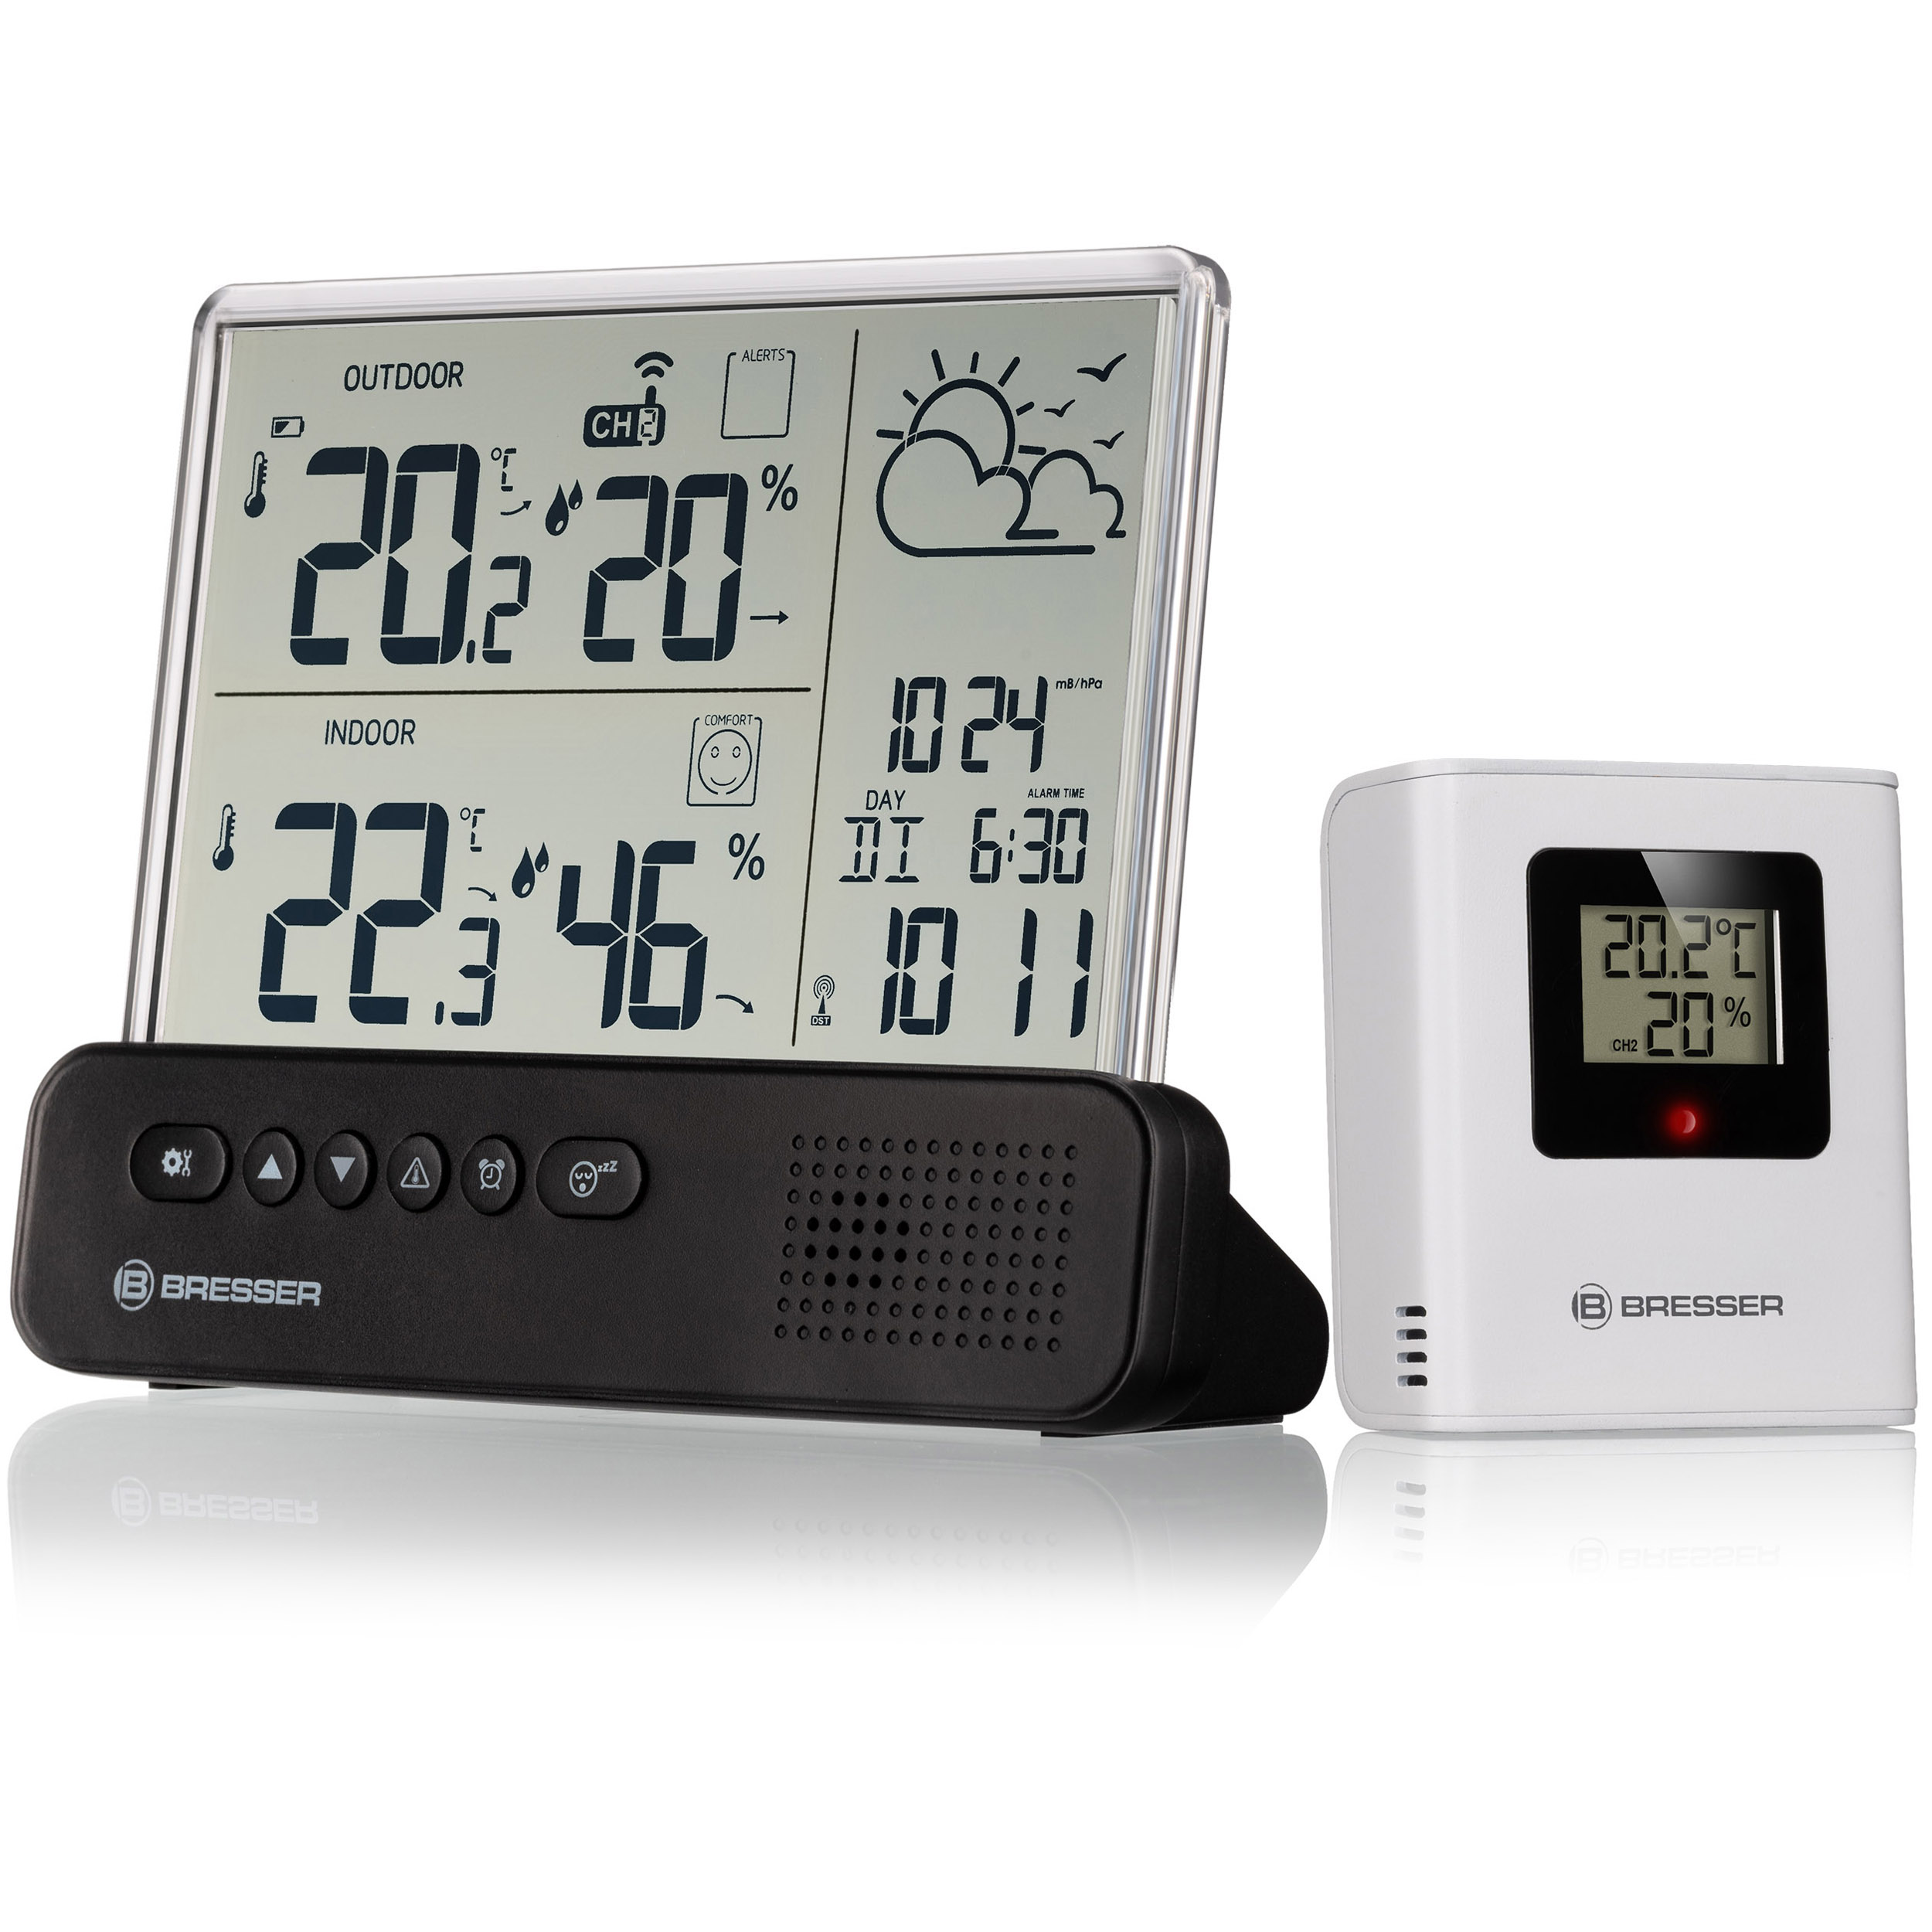 Reloj despertador - Despertador LED en madera, con medidor de temperatura y  humedad INF, madera negra con números LED blancos